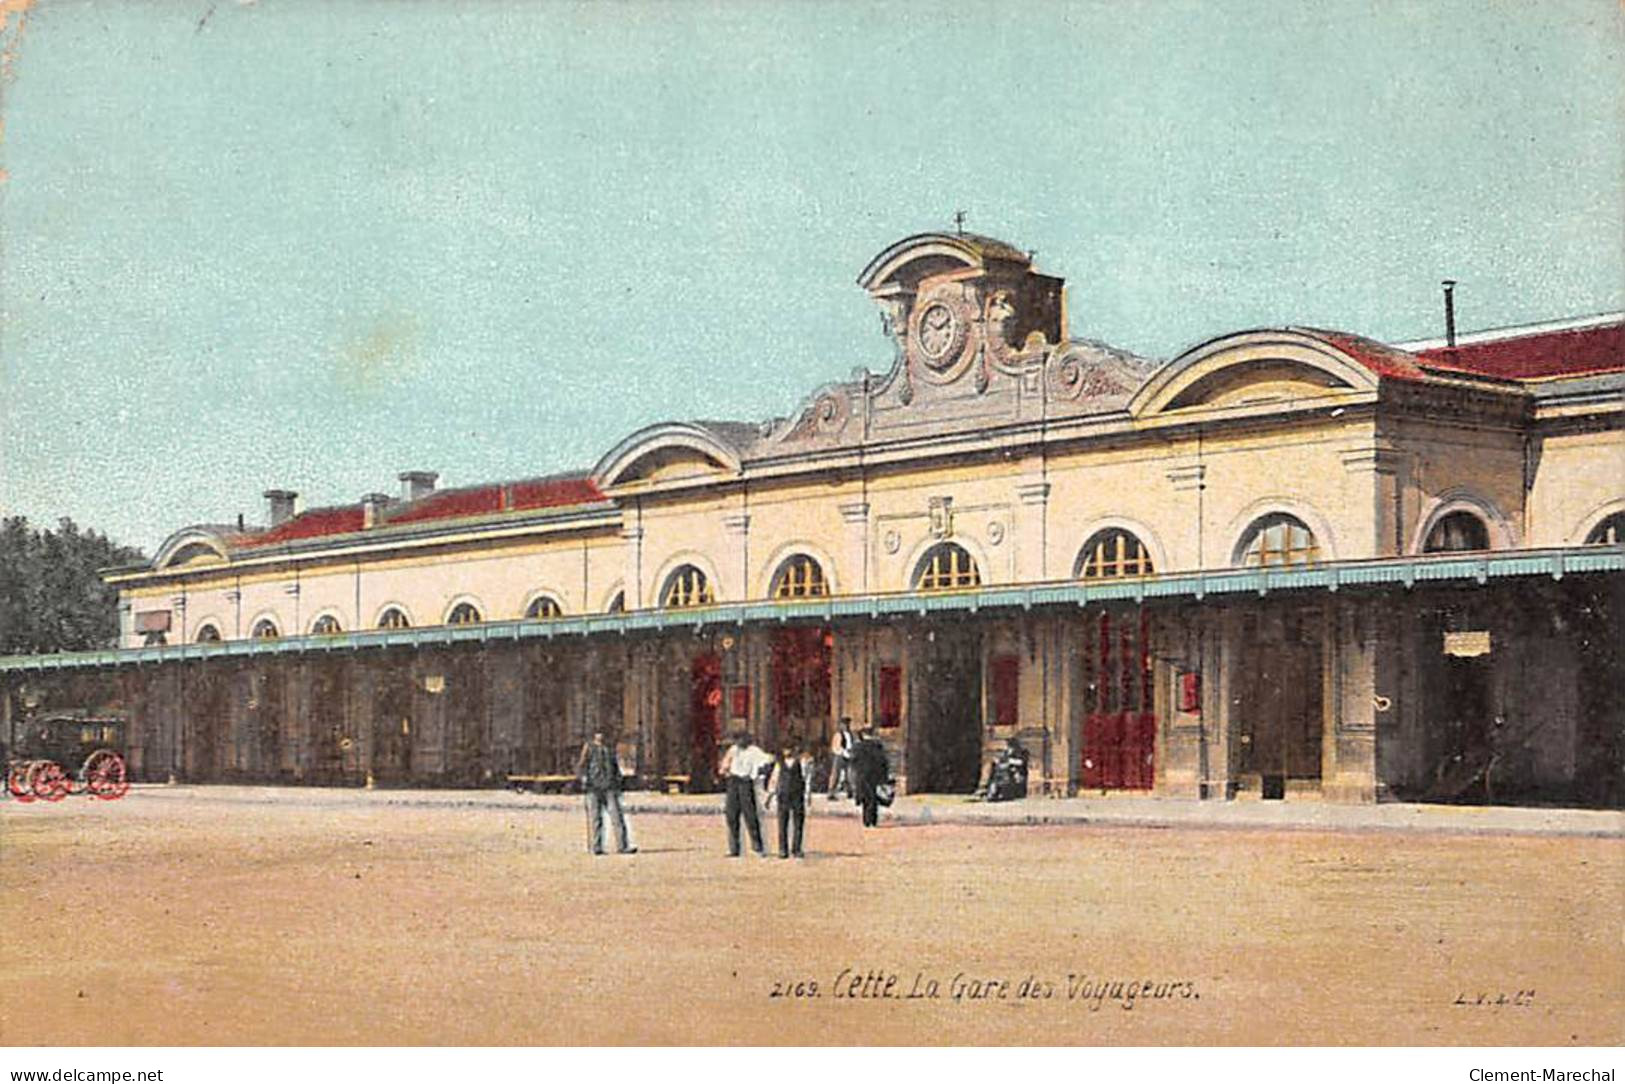 CETTE - La Gare Des Voyageurs - Très Bon état - Sete (Cette)